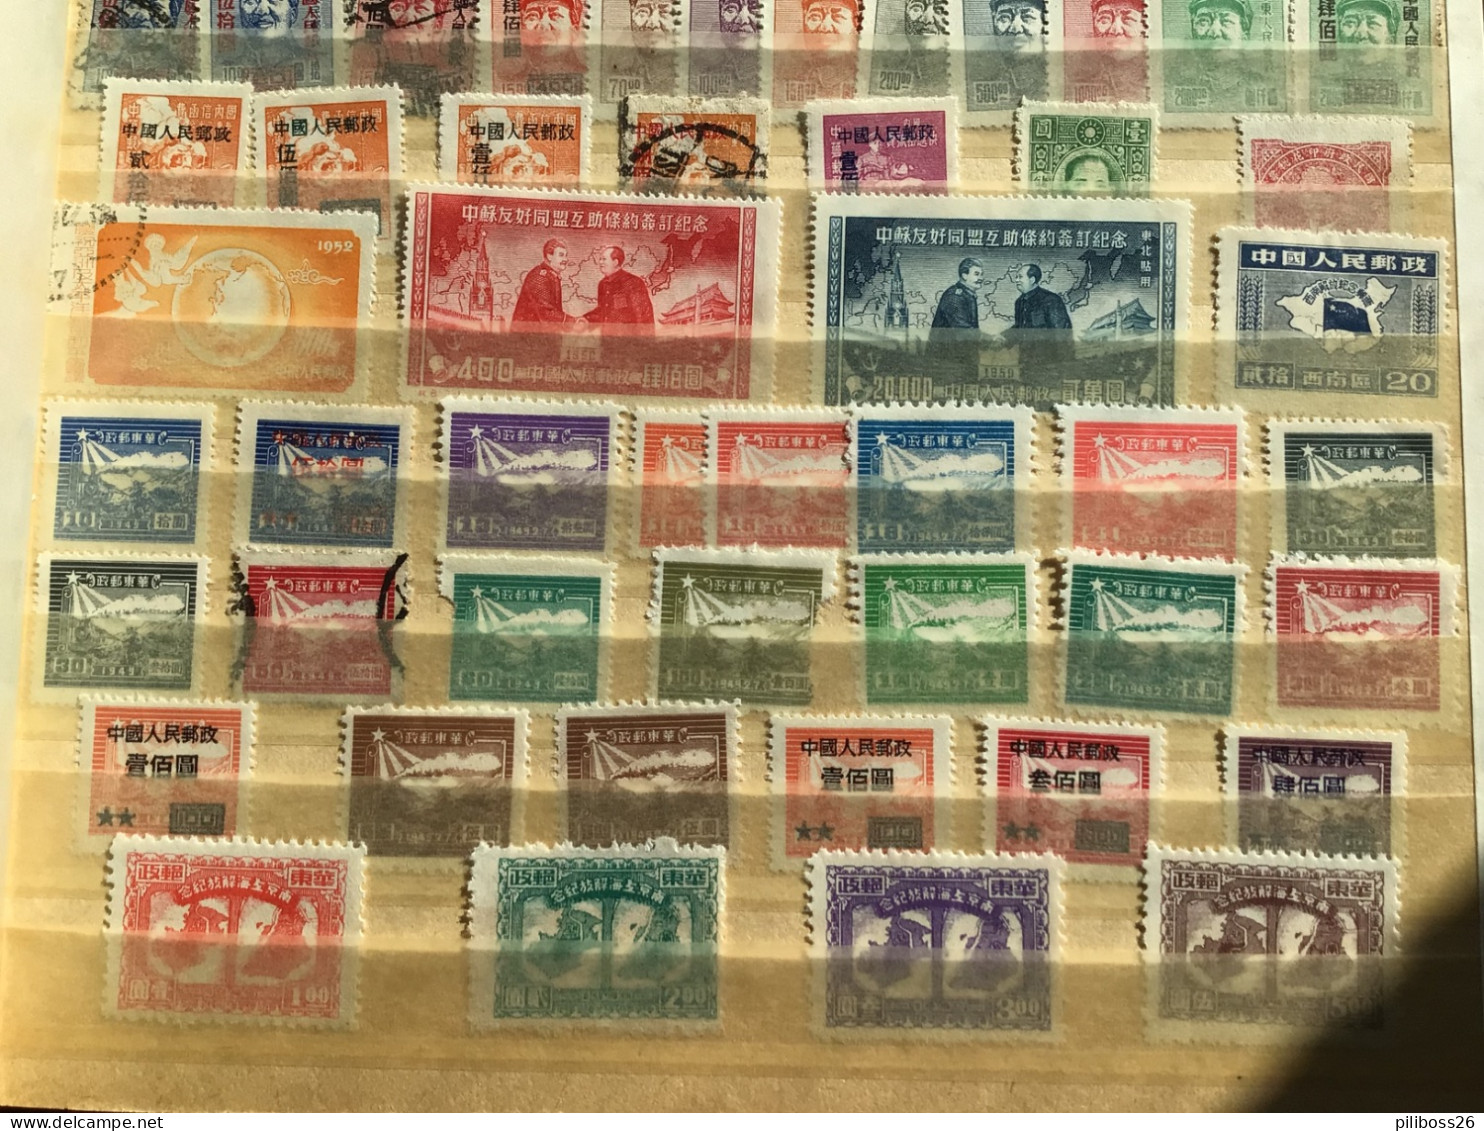 Lot de timbre Chine , collection à trier neufs et oblitérés